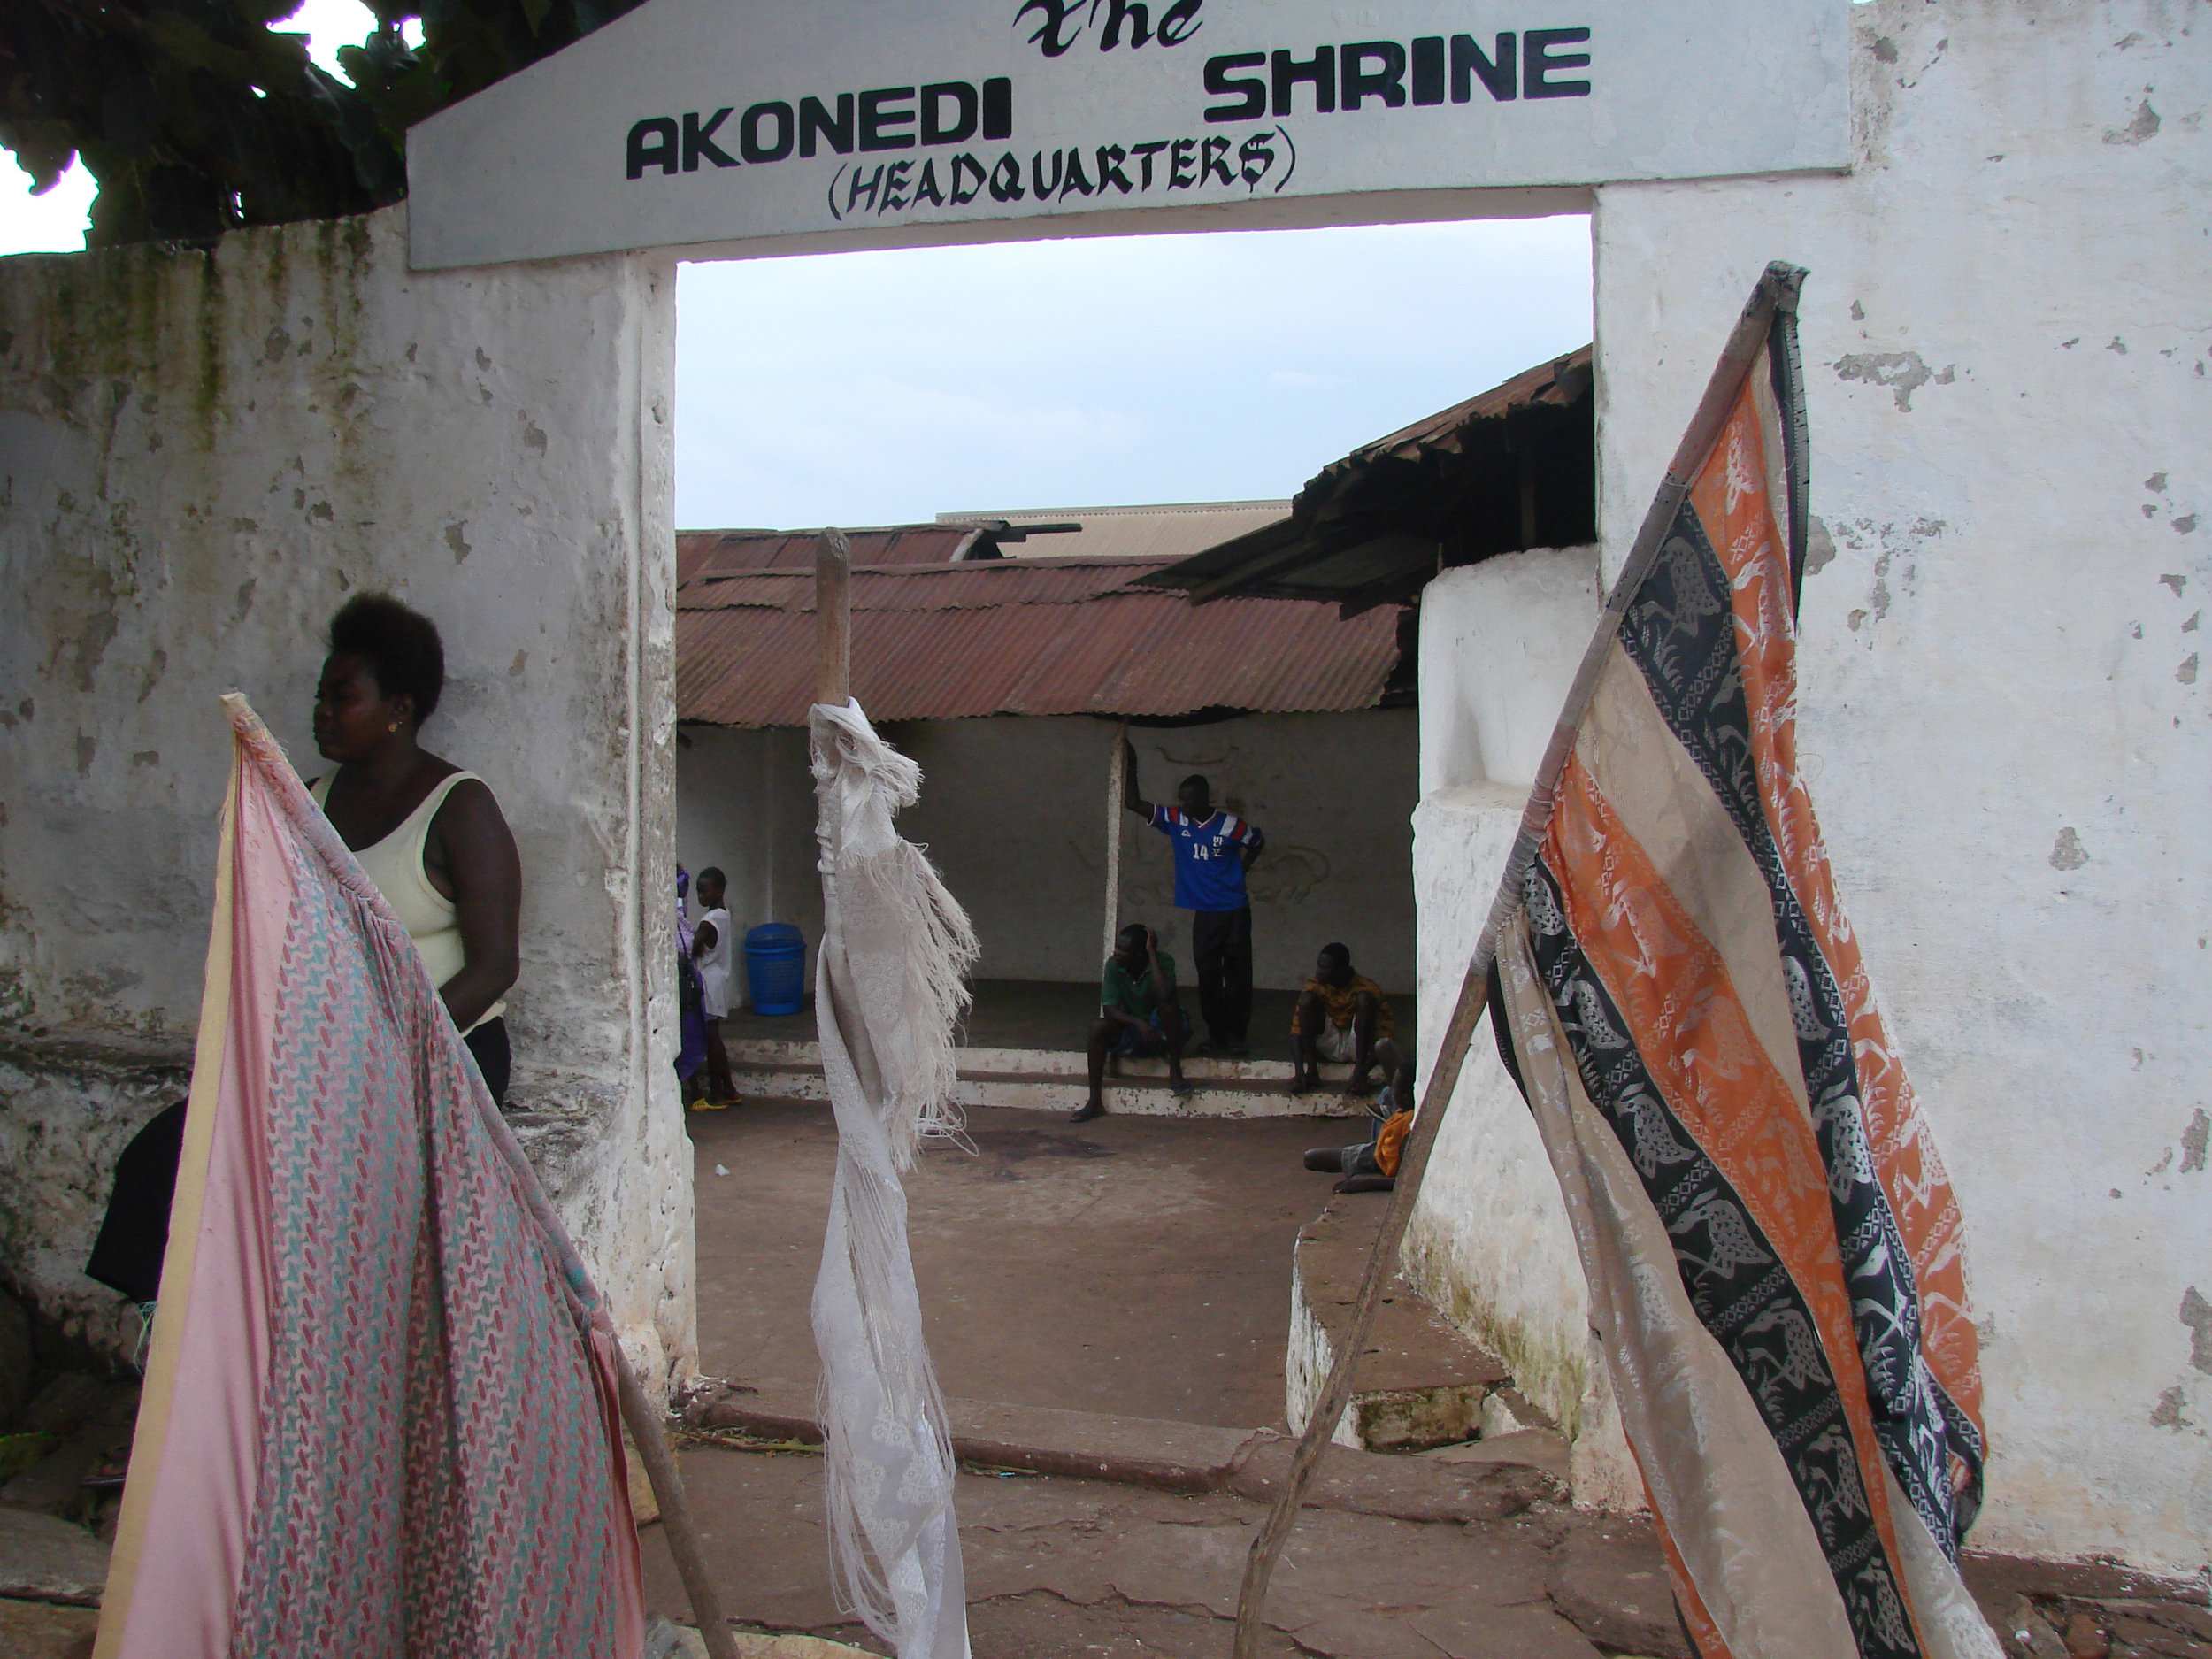 At the Akonedi Shrine in Ghana's Eastern Region